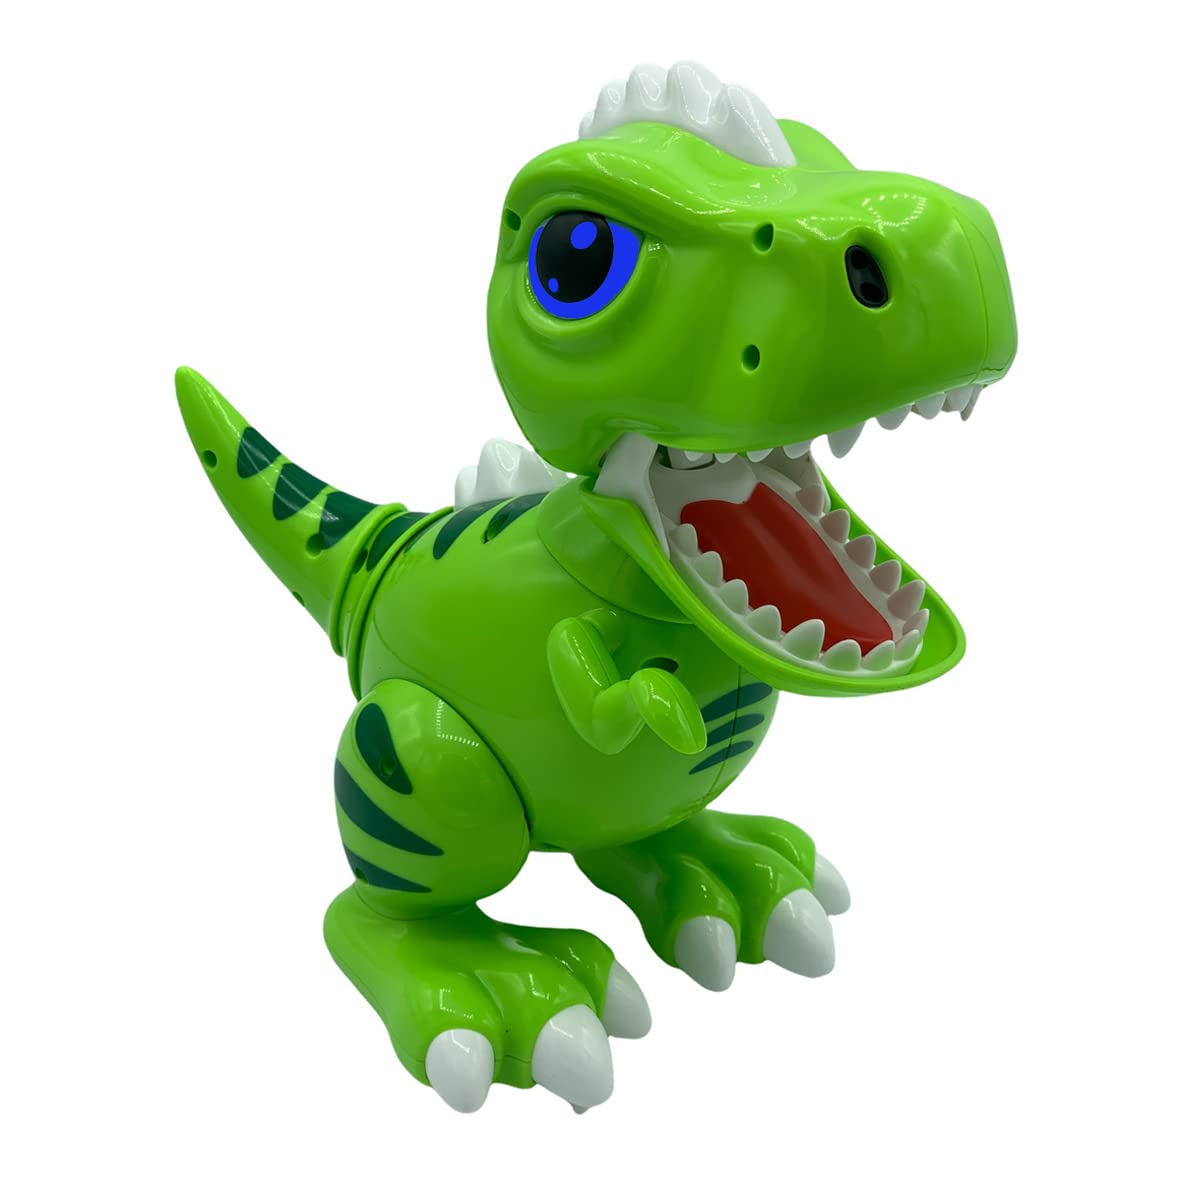 Gear2Play Robo Smart T-Rex - Interaktiver Roboter T-Rex mit LED-Augen, reagiert auf Berührungen und Geräusche und kann wirklich Laufen und Sich bewegen, Dinosaurier, Dino, Spielzeug, Spielen,